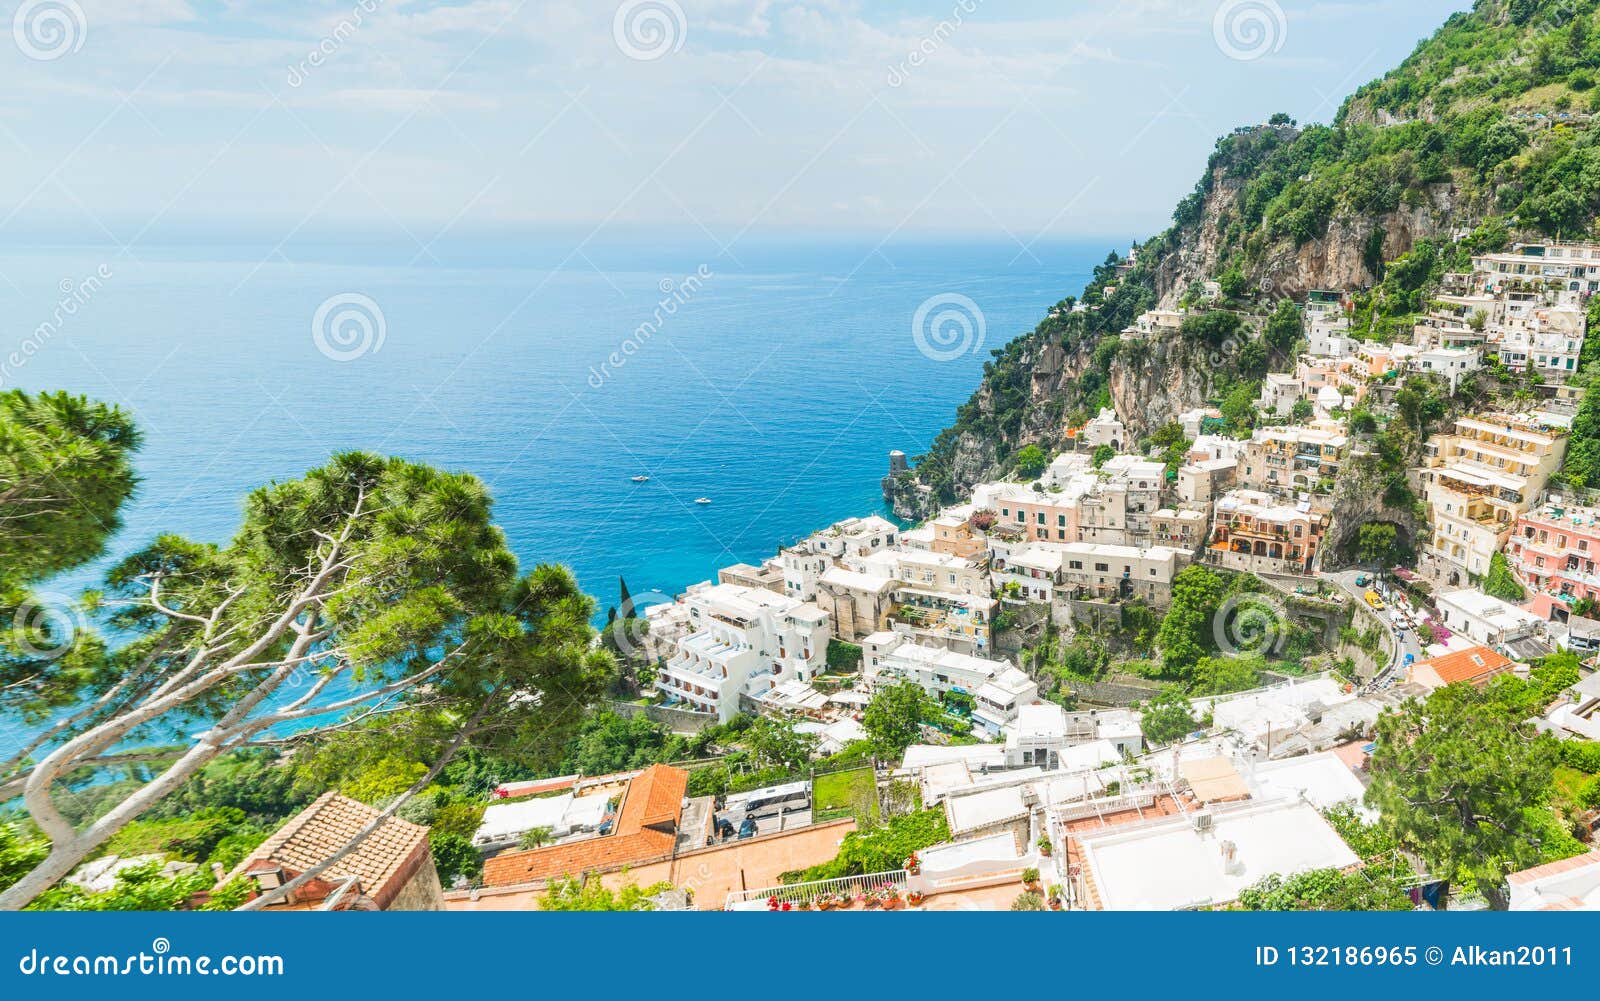 Beautiful Landscape of World Famous Positano Stock Image - Image of ...